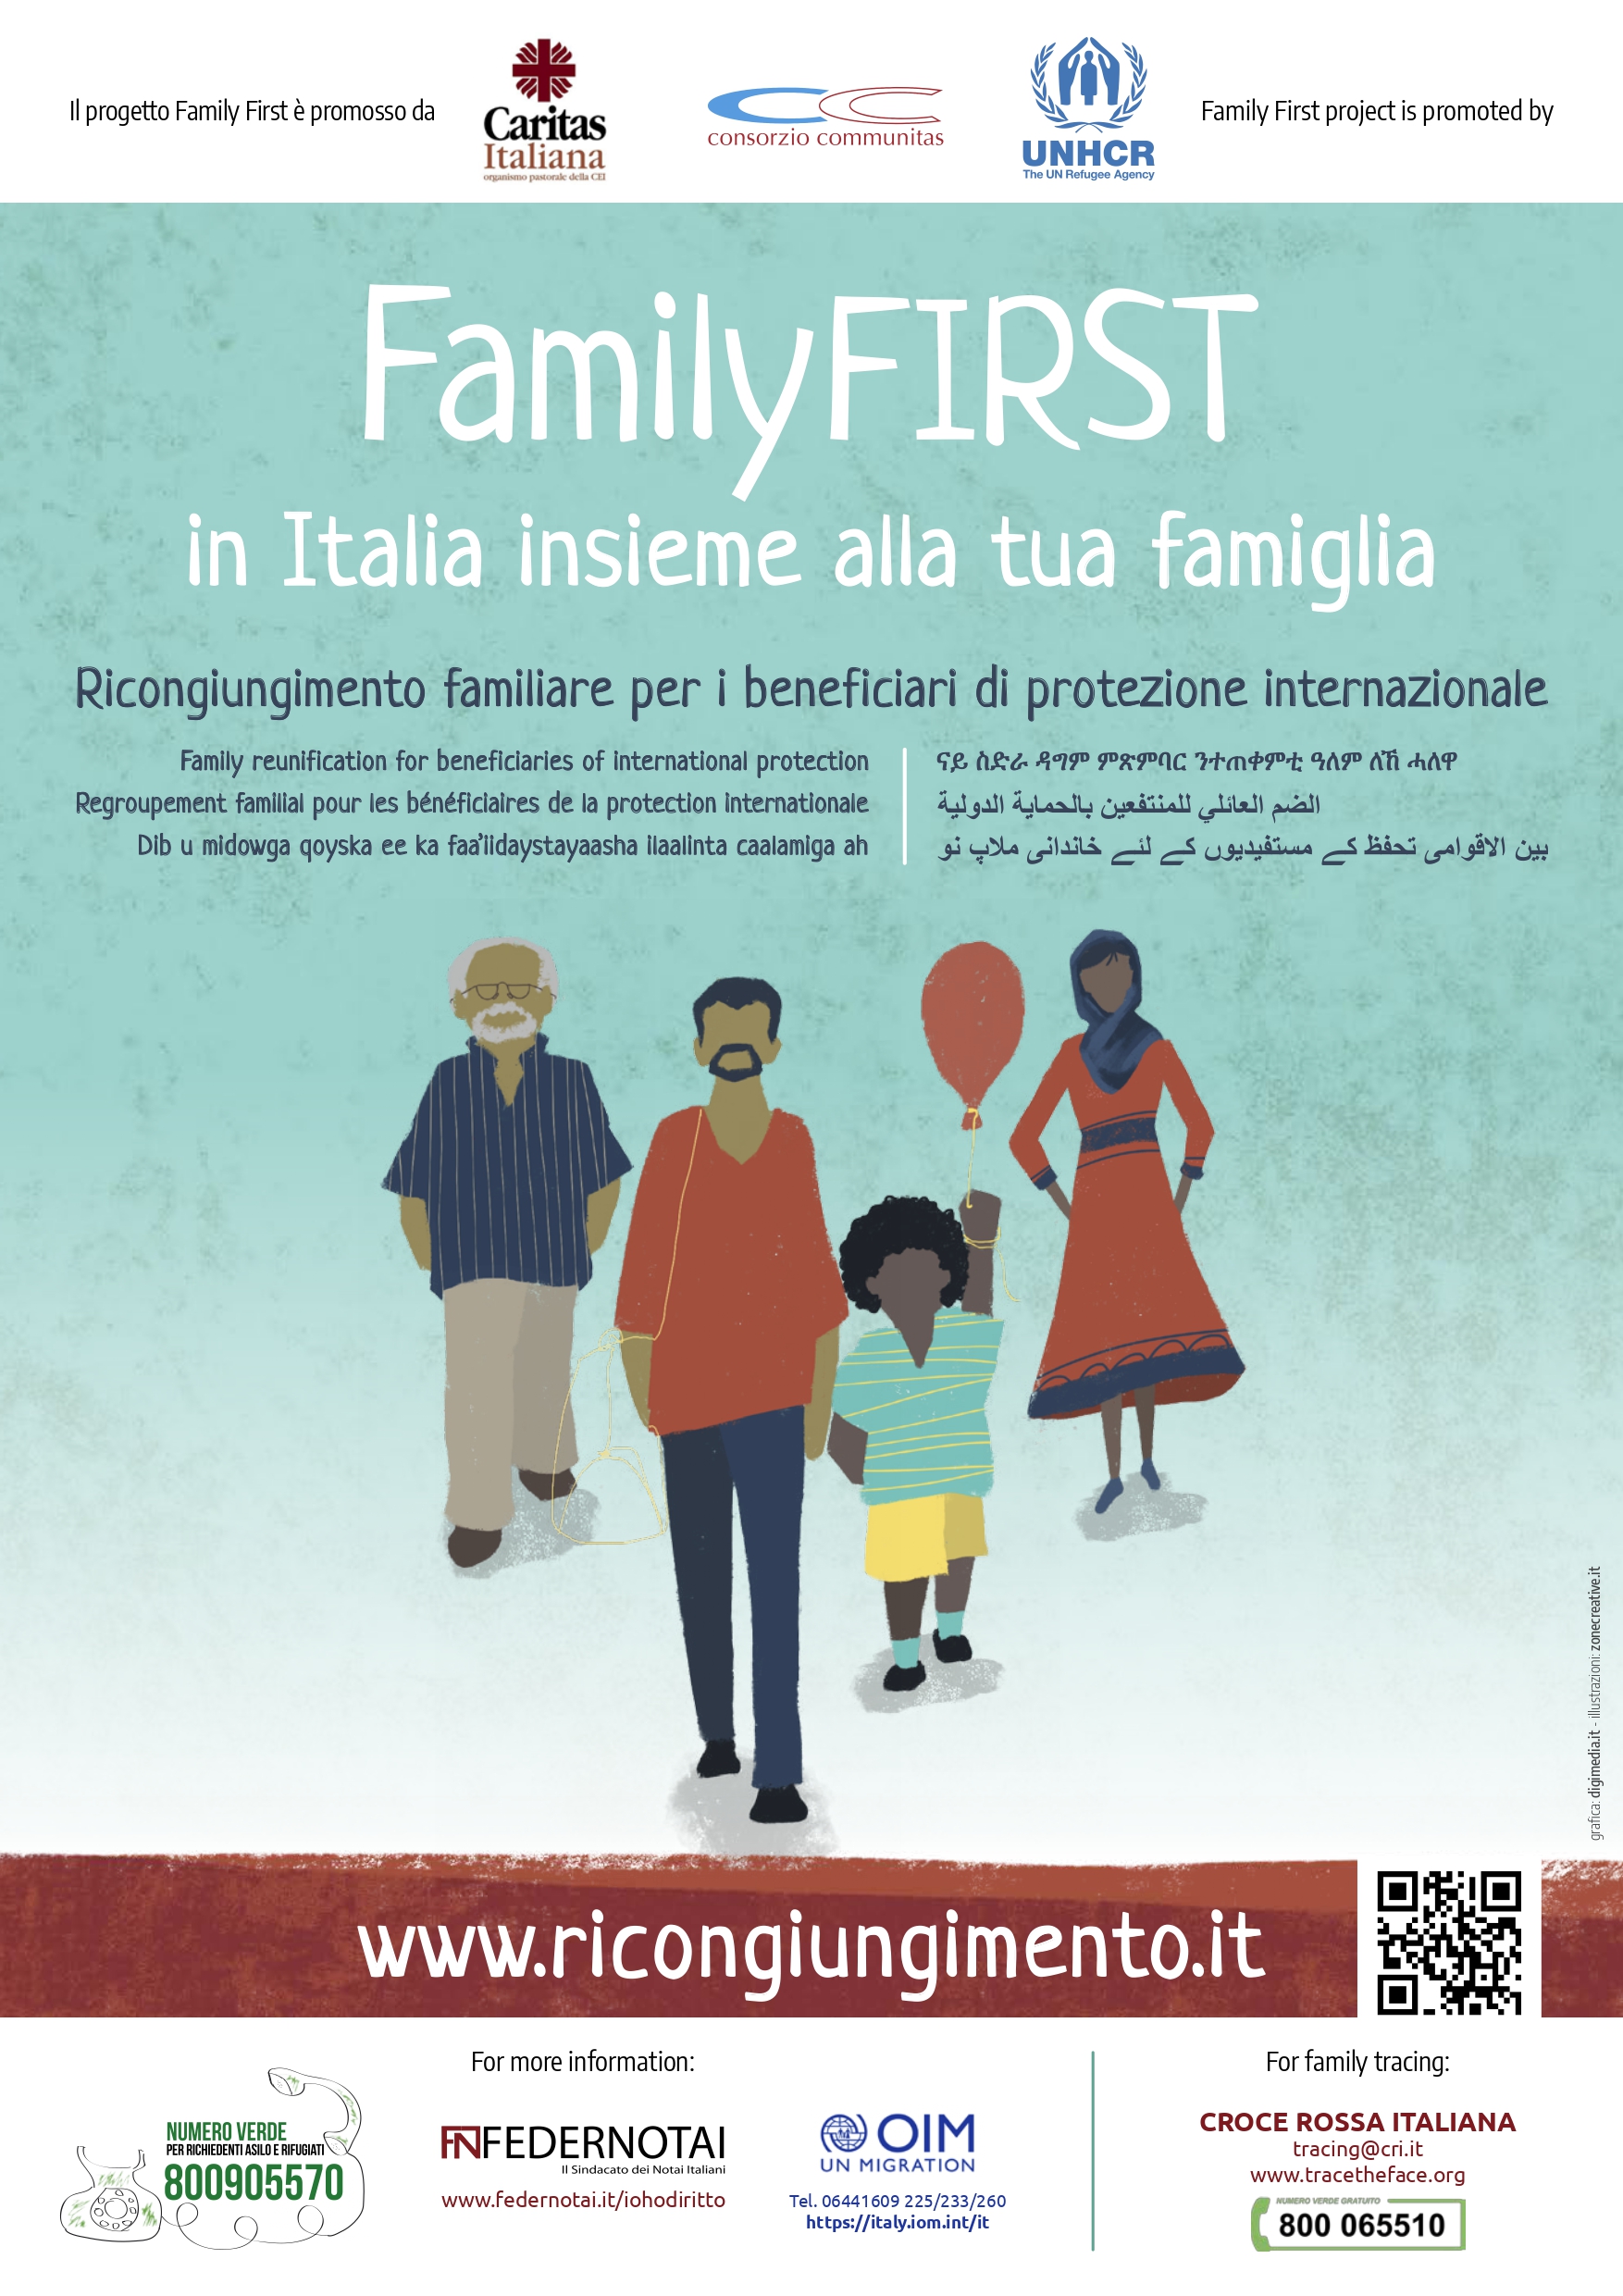 Family First, istruzioni per il ricongiungimento familiare per beneficiari di protezione internazionale